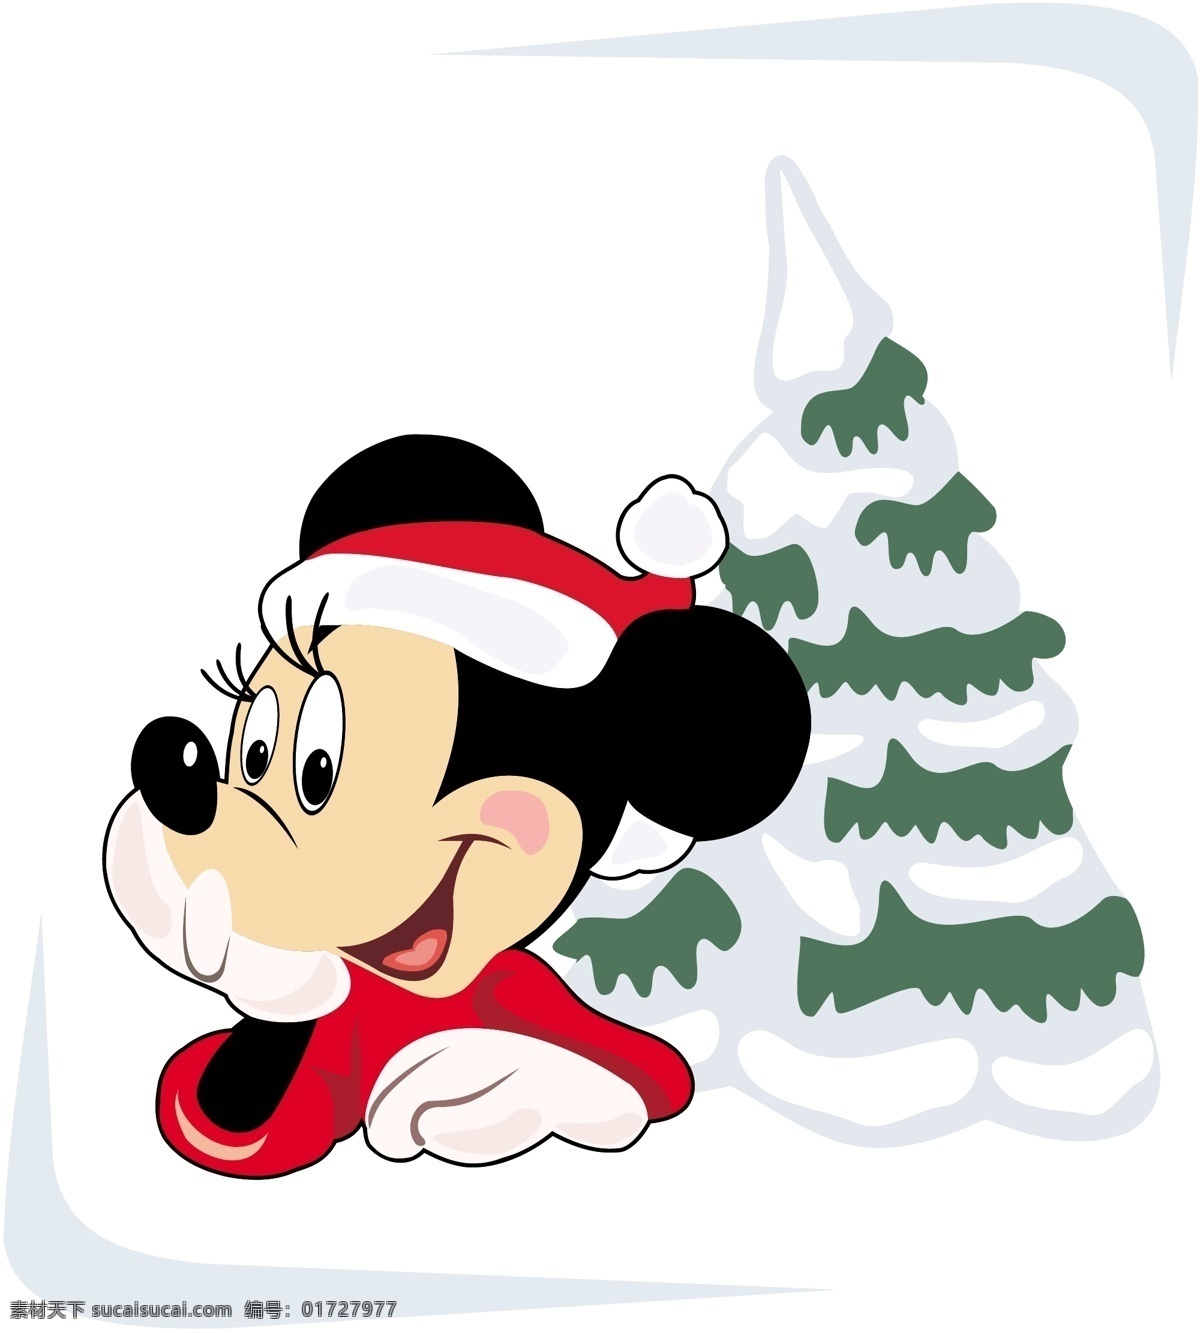 圣诞节 米老鼠 圣诞树 红色米老鼠 雪